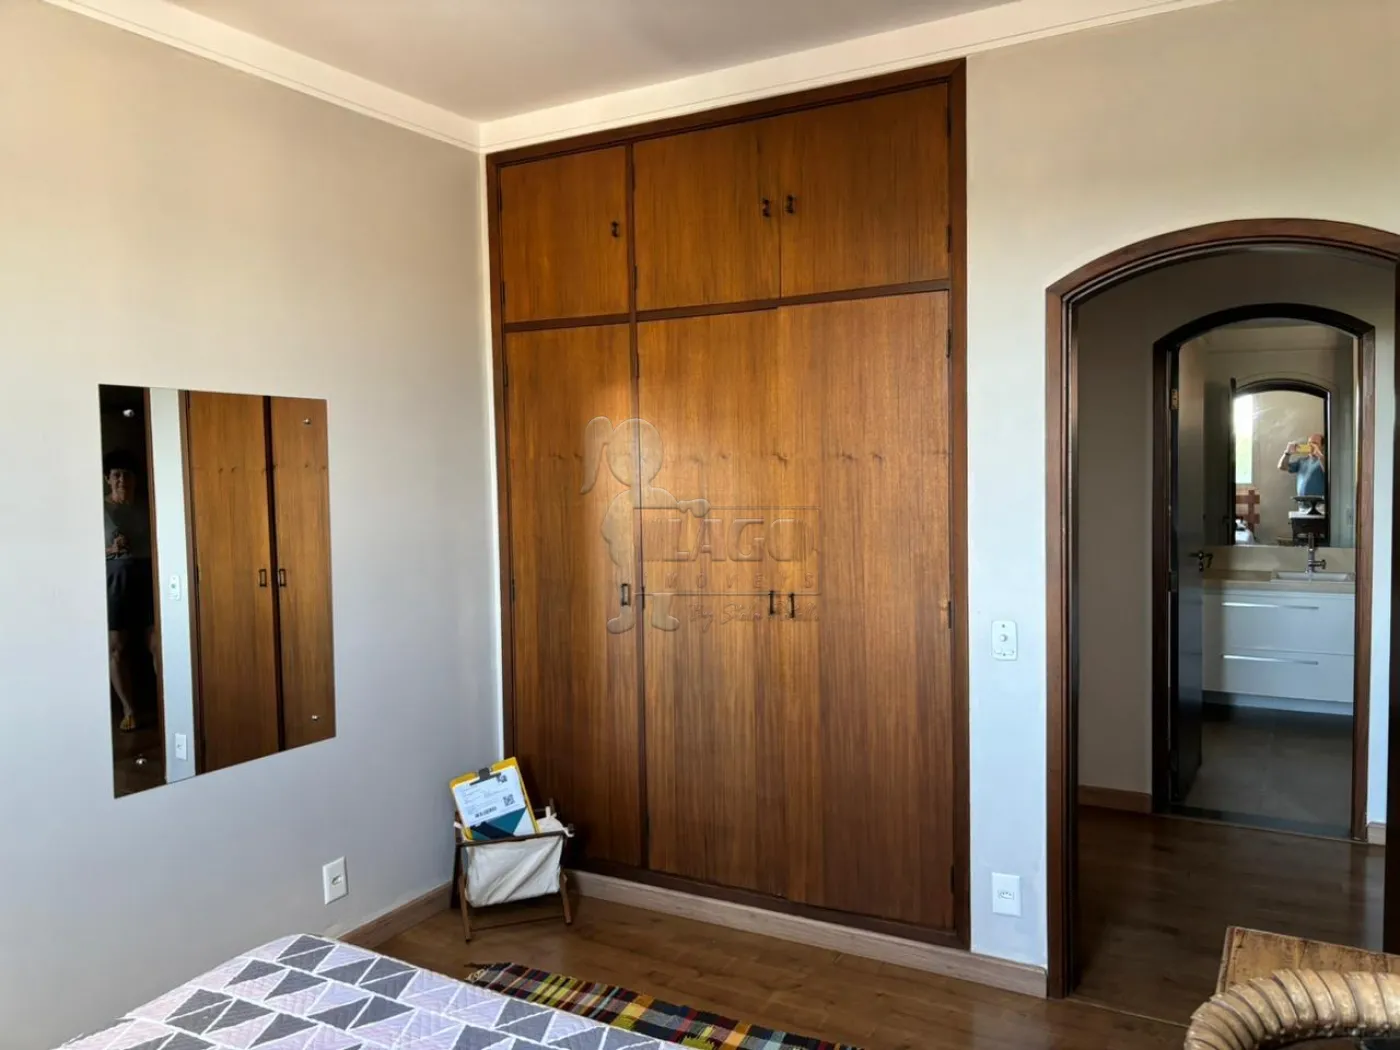 Comprar Apartamento / Padrão em Ribeirão Preto R$ 550.000,00 - Foto 19